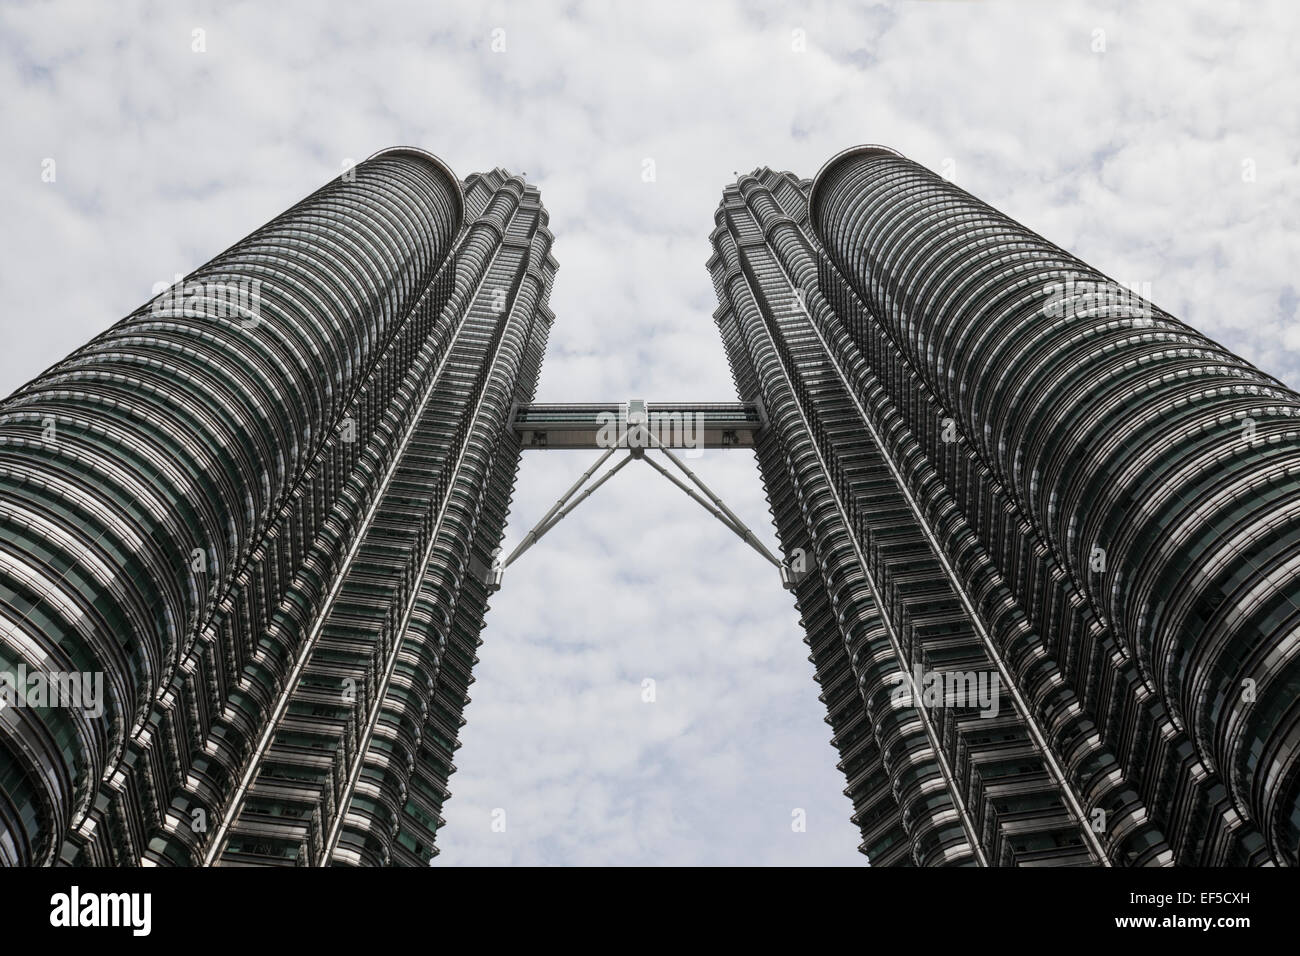 Landmark twin towers in the centre of Kuala Lumpur, Malaysia Stock Photo